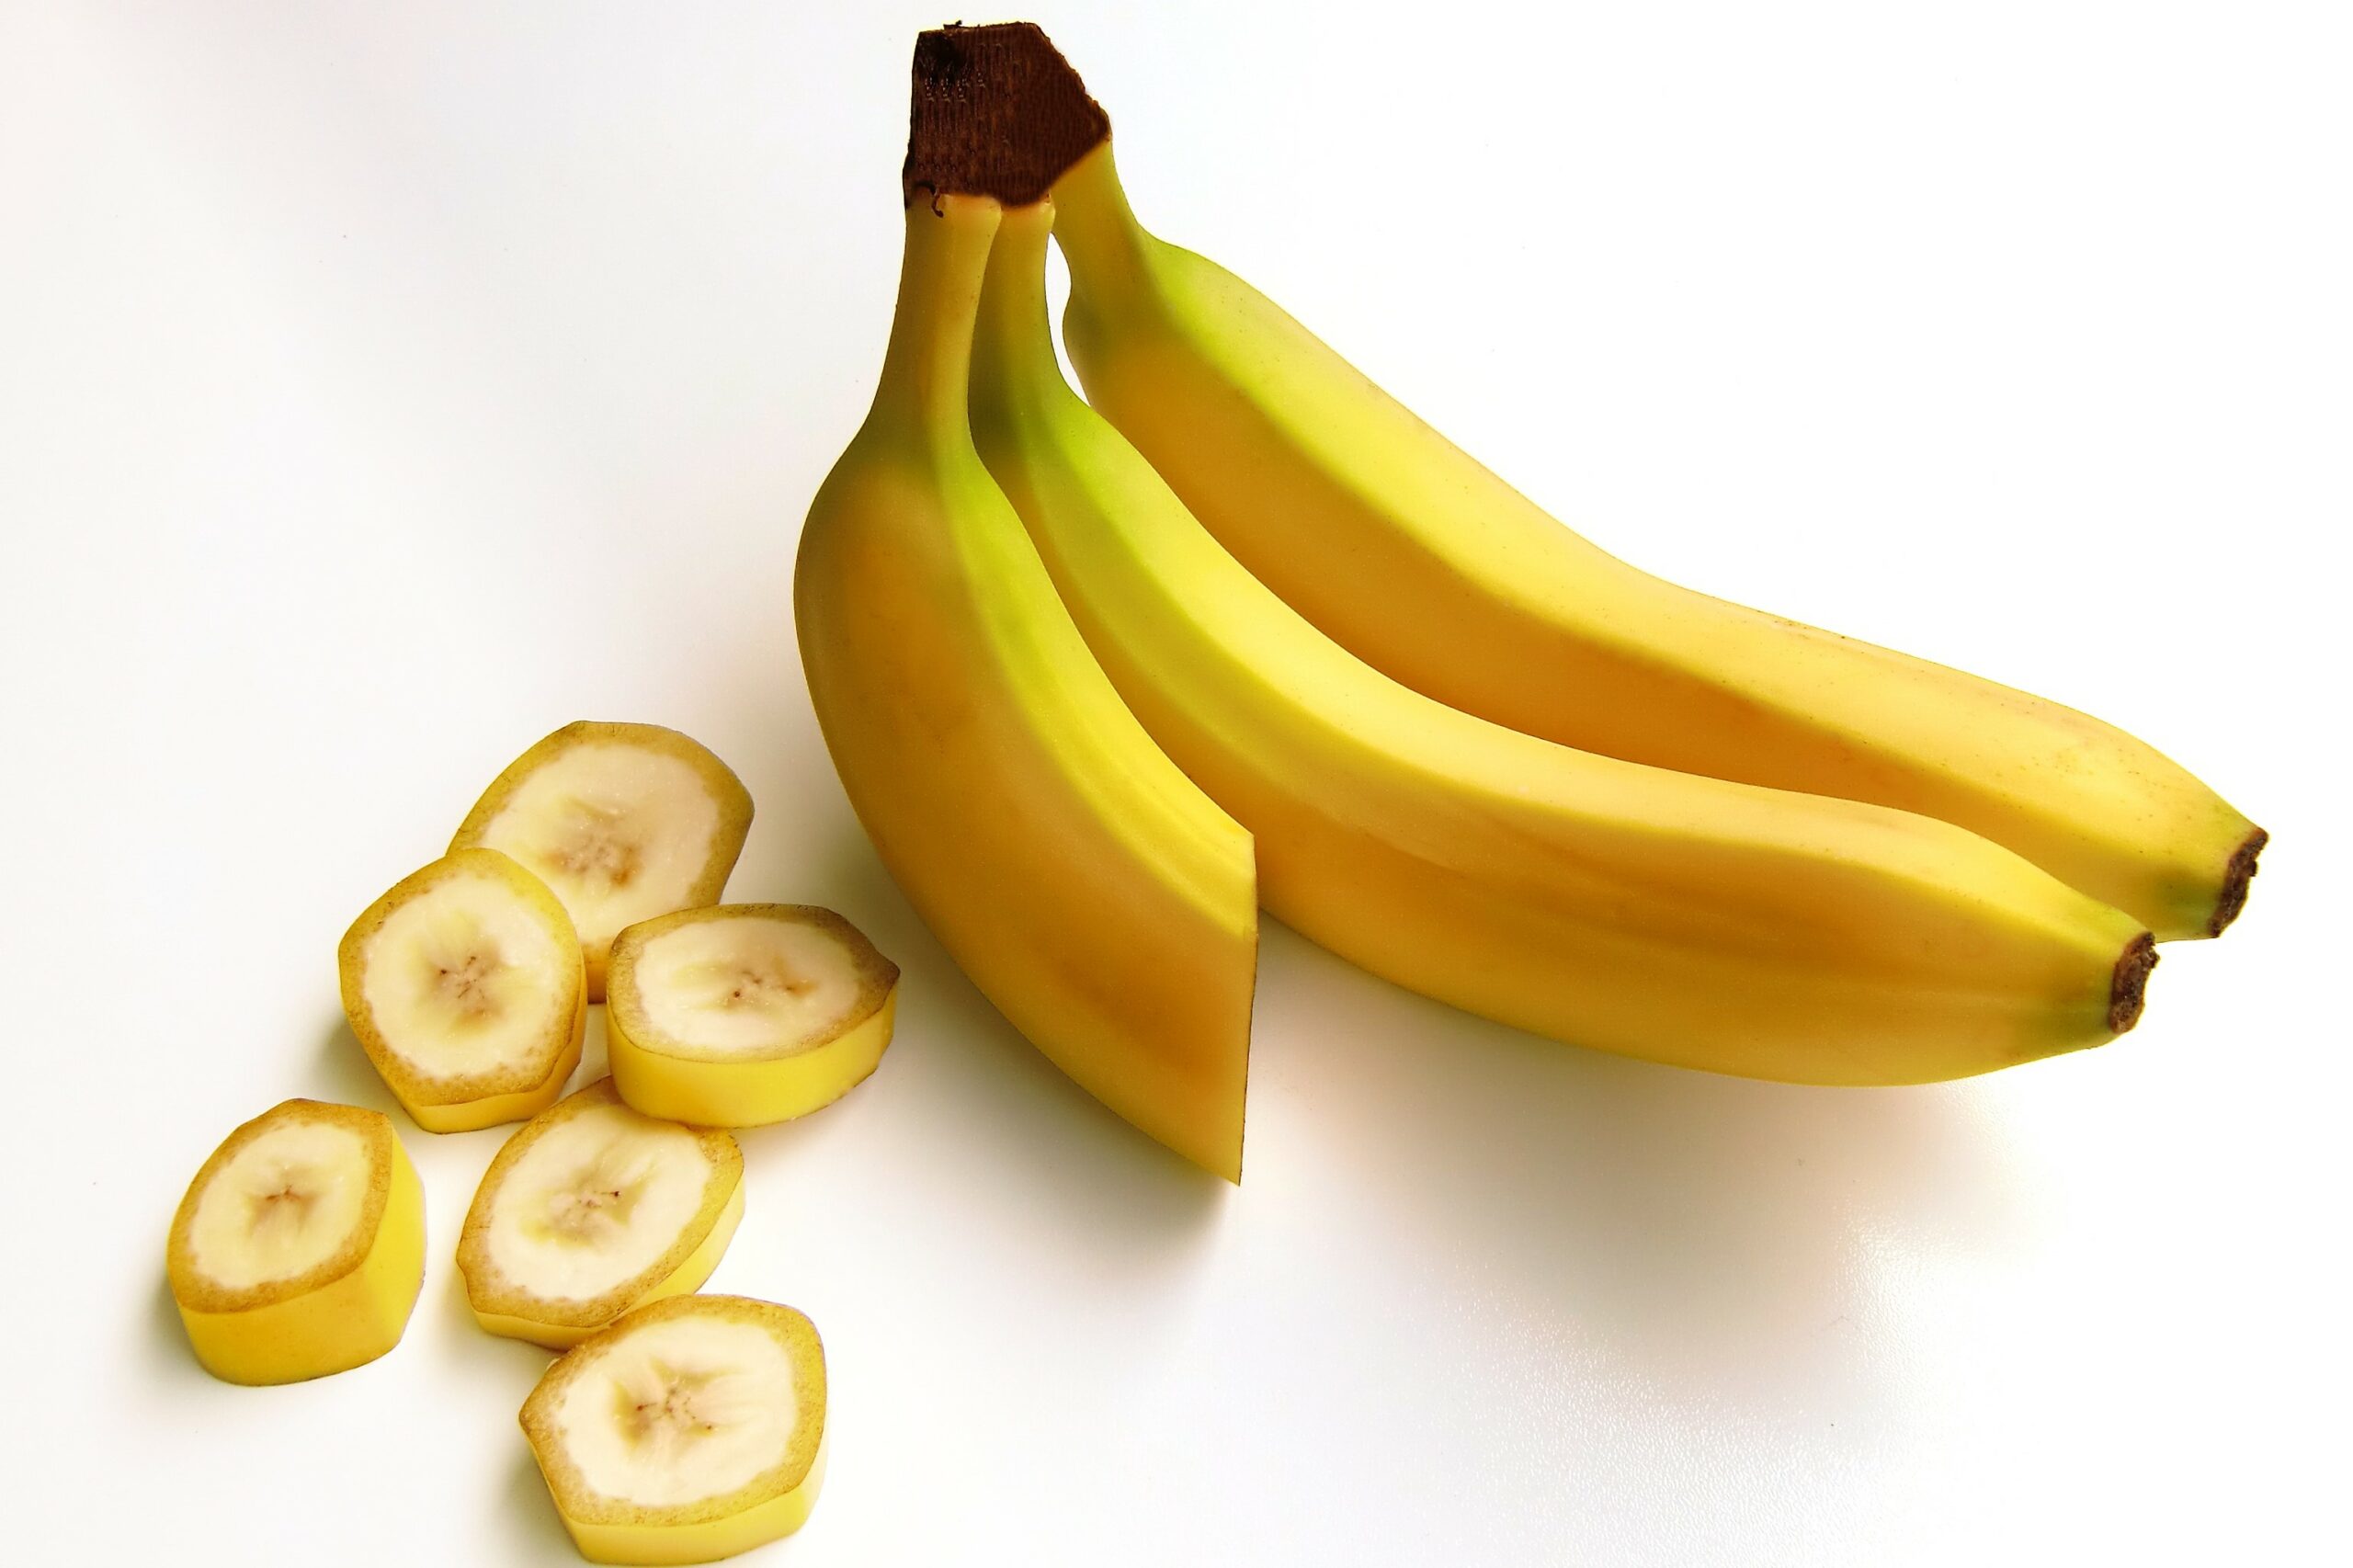 Бананы в рационе способны положительно влиять на настроение человека.